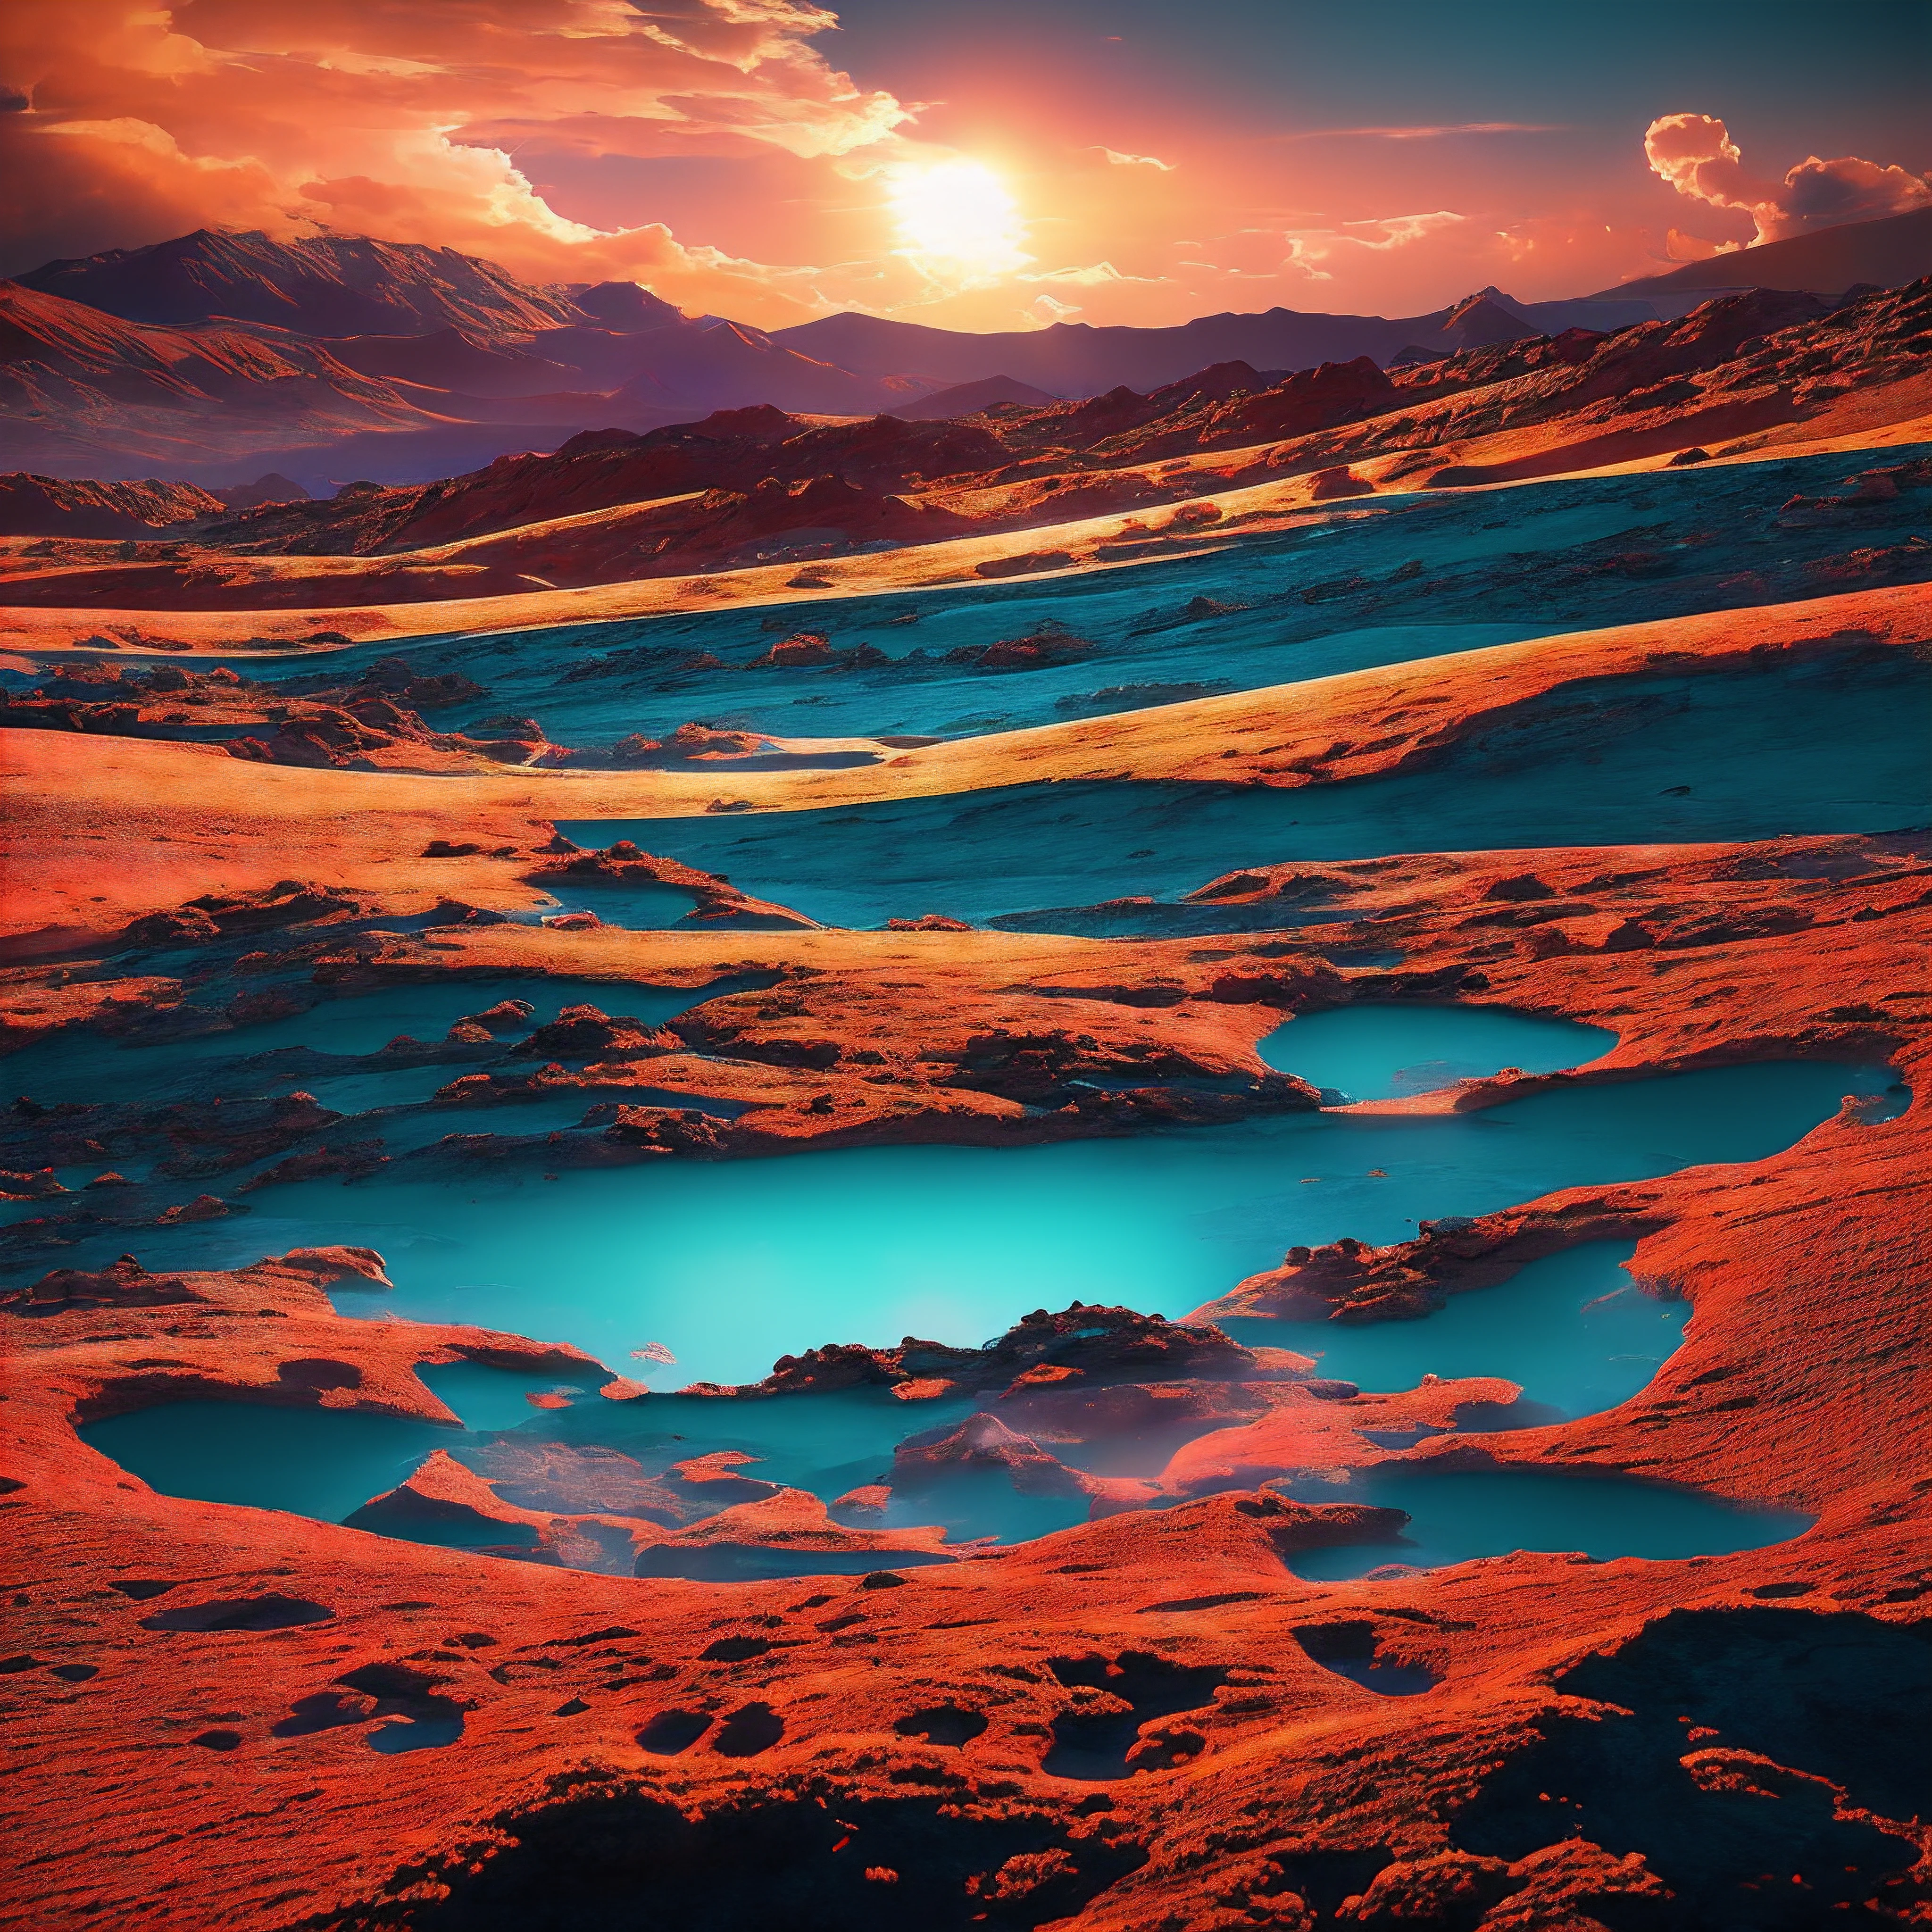 火星の真っ赤な砂丘は何マイルも続いていた, ピンク色の空に浮かぶ二つの月の光を浴びて. 不毛の地に散らばる, 錆色の風景は氷河の塊だった, 太陽の光の中で明るく輝く. パチパチと音を立てる稲妻が薄い大気を激しく貫いた, オゾンの臭いを残す.

異国の地をゆっくりと歩いていたのは奇妙な生き物だった. それは地球の鹿のような穏やかな特徴を持っていた, 大きな黒い目とピクピク動く鼻を持つ. しかし、その毛皮は渦巻く赤色に染まっていた, オレンジ, 青, 緑と紫, 近くの宇宙塵雲を模倣しているようだ. 枝分かれした枝角は骨というより花の咲いた蔓のようだった.

虹の鹿は石に閉じ込められた化石の森をさまよった, 青緑色に輝く氷の峡谷, きらきらと輝く墨のような液体が泡立つ池. 峡谷の壁に生える光る地衣類を餌にし、乳白色に輝く小川から水を飲んだ。. 遠方に, 重なり合う三つの月の光の下、火山は空に燃える残り火を噴いた。.

風景は絶えず変化していた, 轟く砂嵐が岩だらけの土壌から霧のような間欠泉をランダムに噴出させる. しかし虹の鹿は気に留めなかった, 静かにこの異星の世界を探索し、. そのプリズムの色彩は、生命のない赤い岩と黄土色の砂を背景に鮮やかに際立っていた。. 遠い世界に生きる虹.